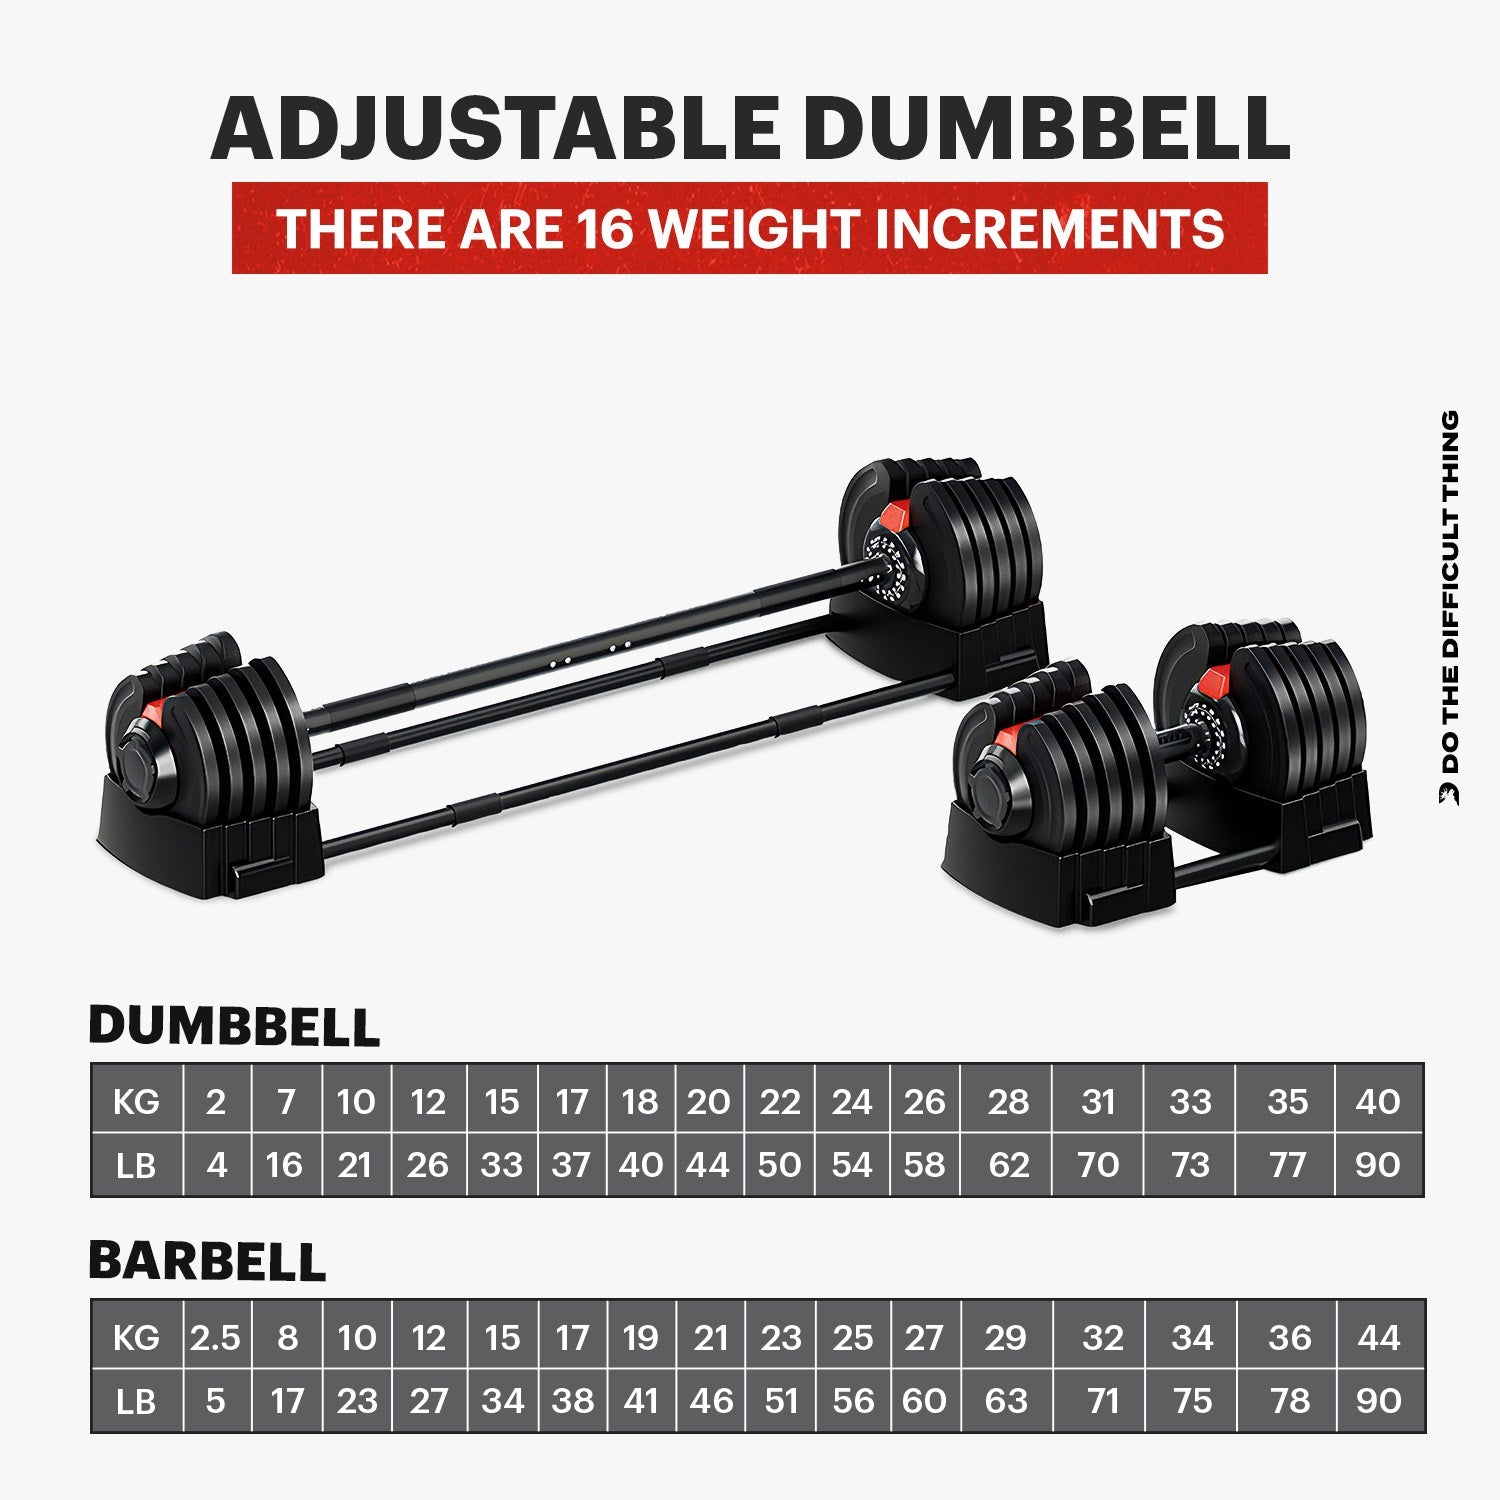 DMoose 90 LB Adjustable Dumbbell & Barbell Set